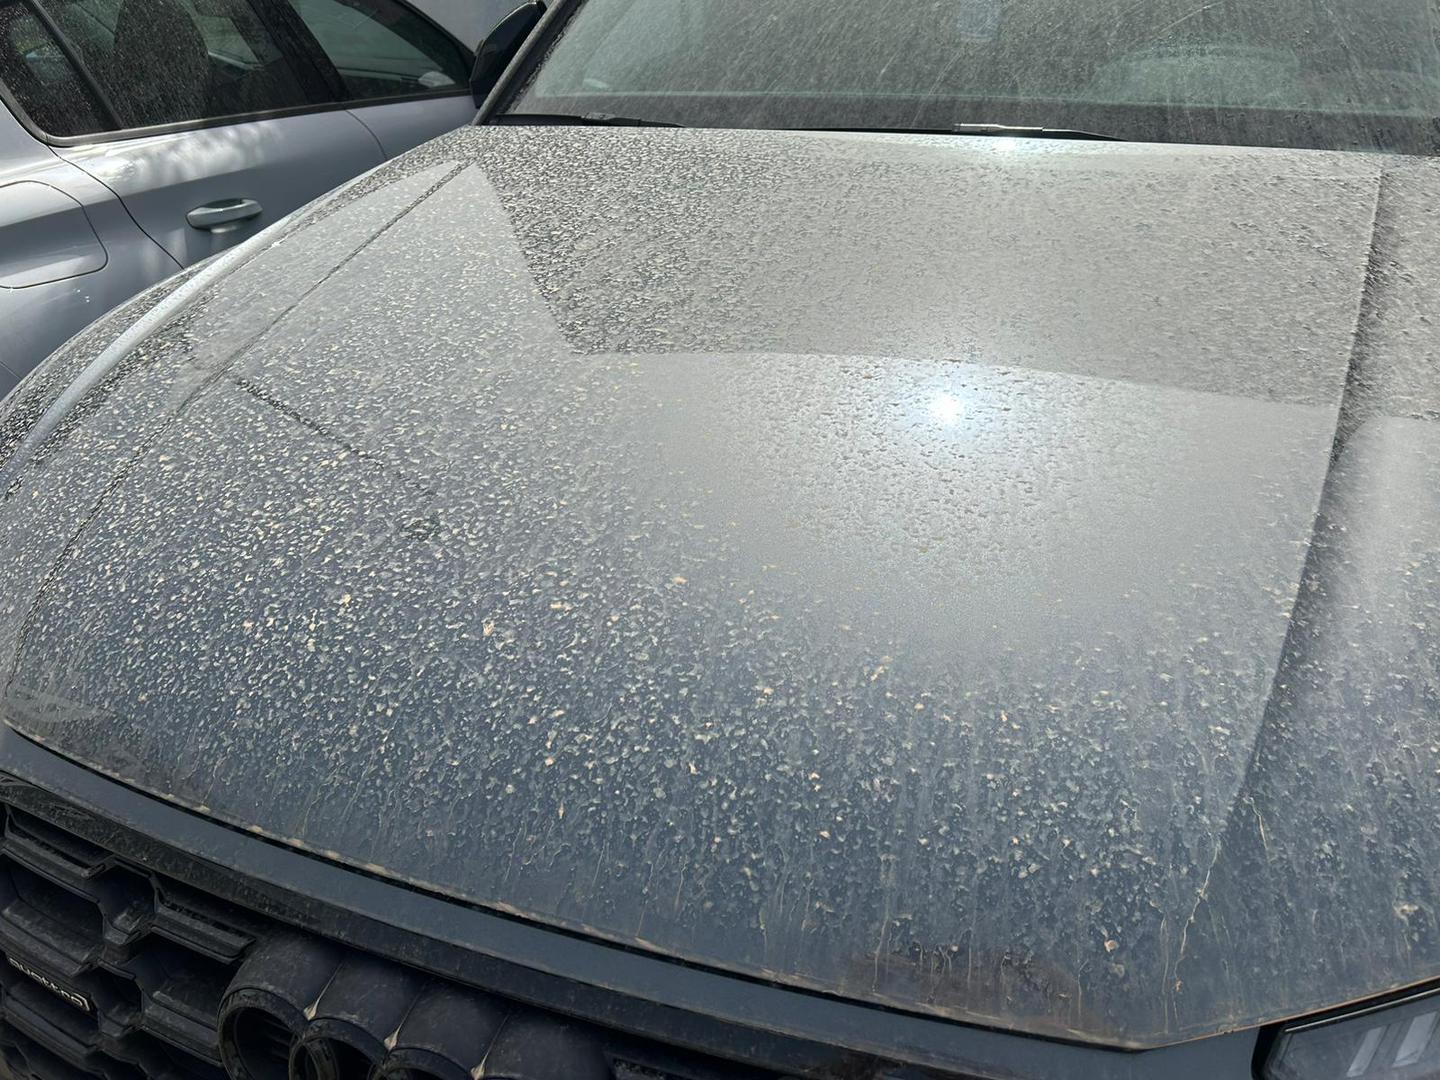 Poprilično veliki ostaci čestica pijeska najbolje se vide na automobilima